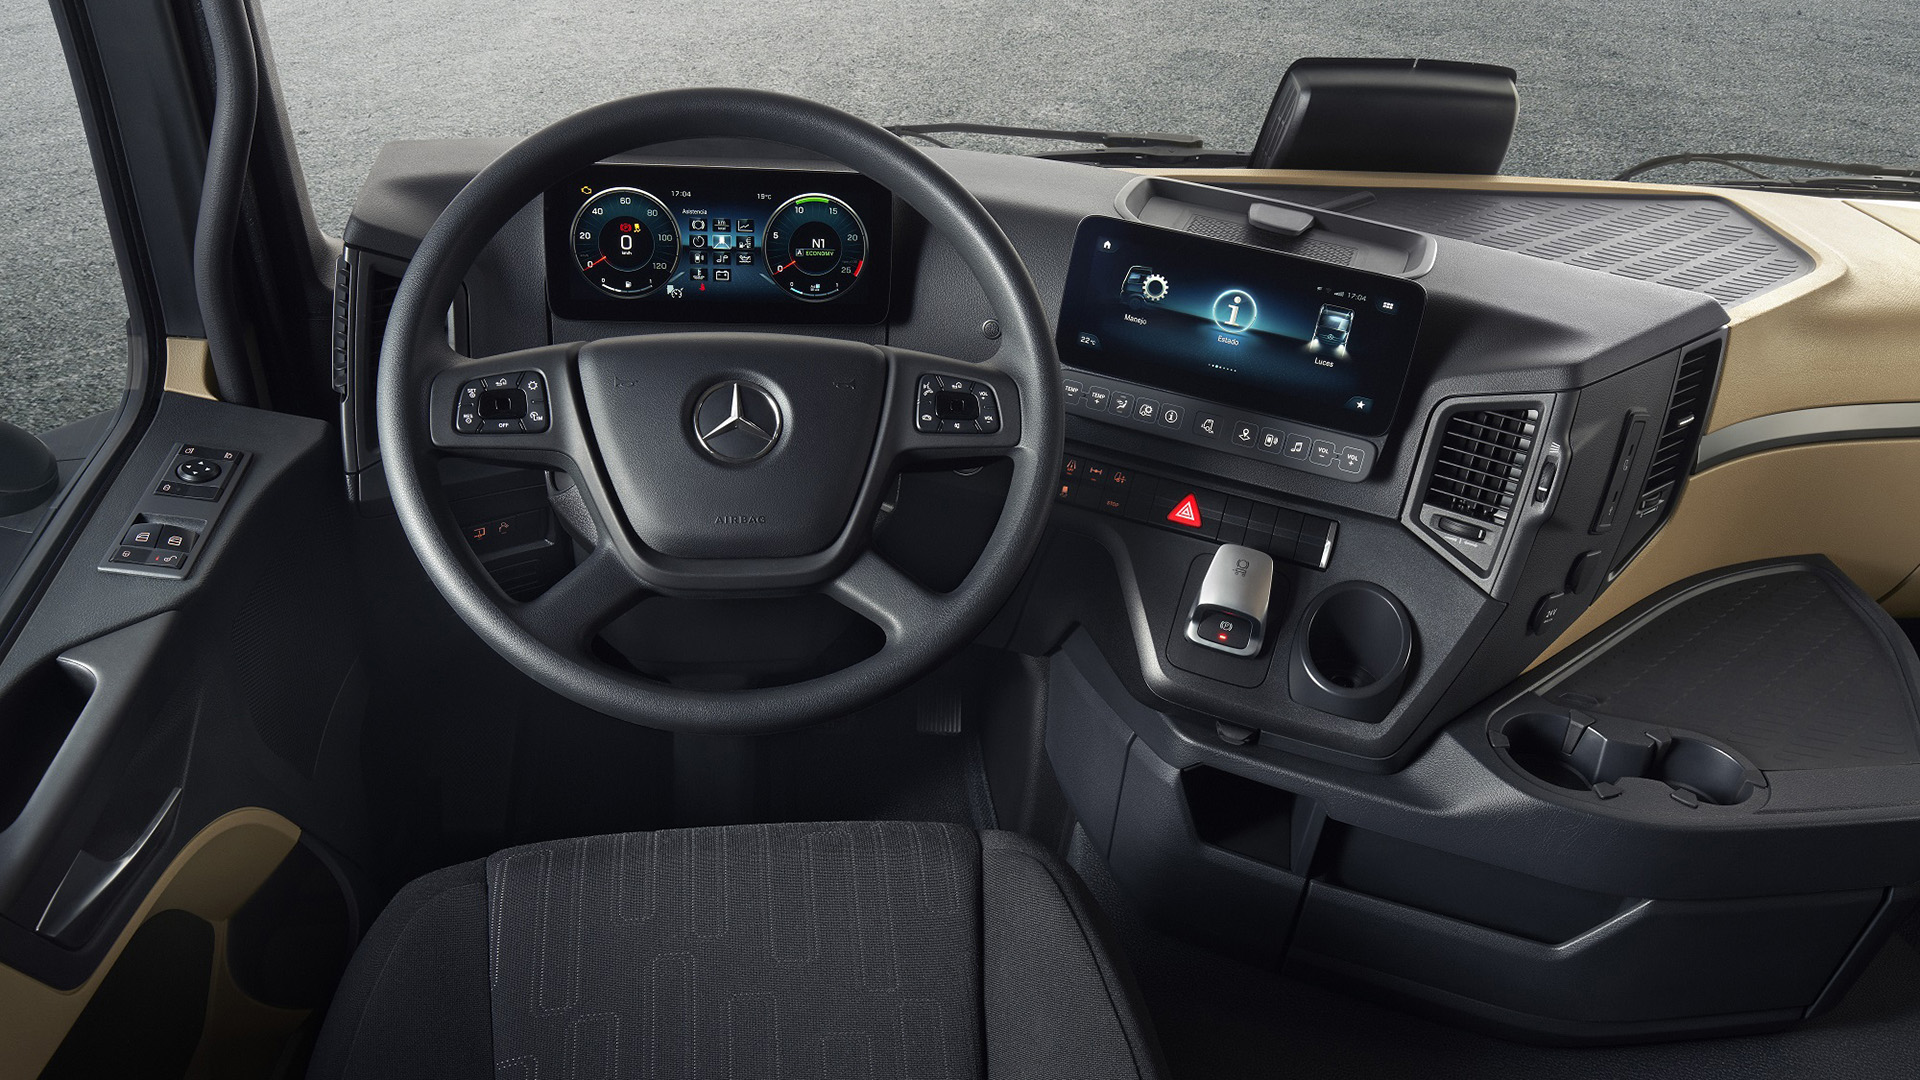 Equipamiento interior con tecnología Multimedia Cockpit con dos pantallas de 10”. (Crédito:  Mercedes-Benz Camiones y Buses)